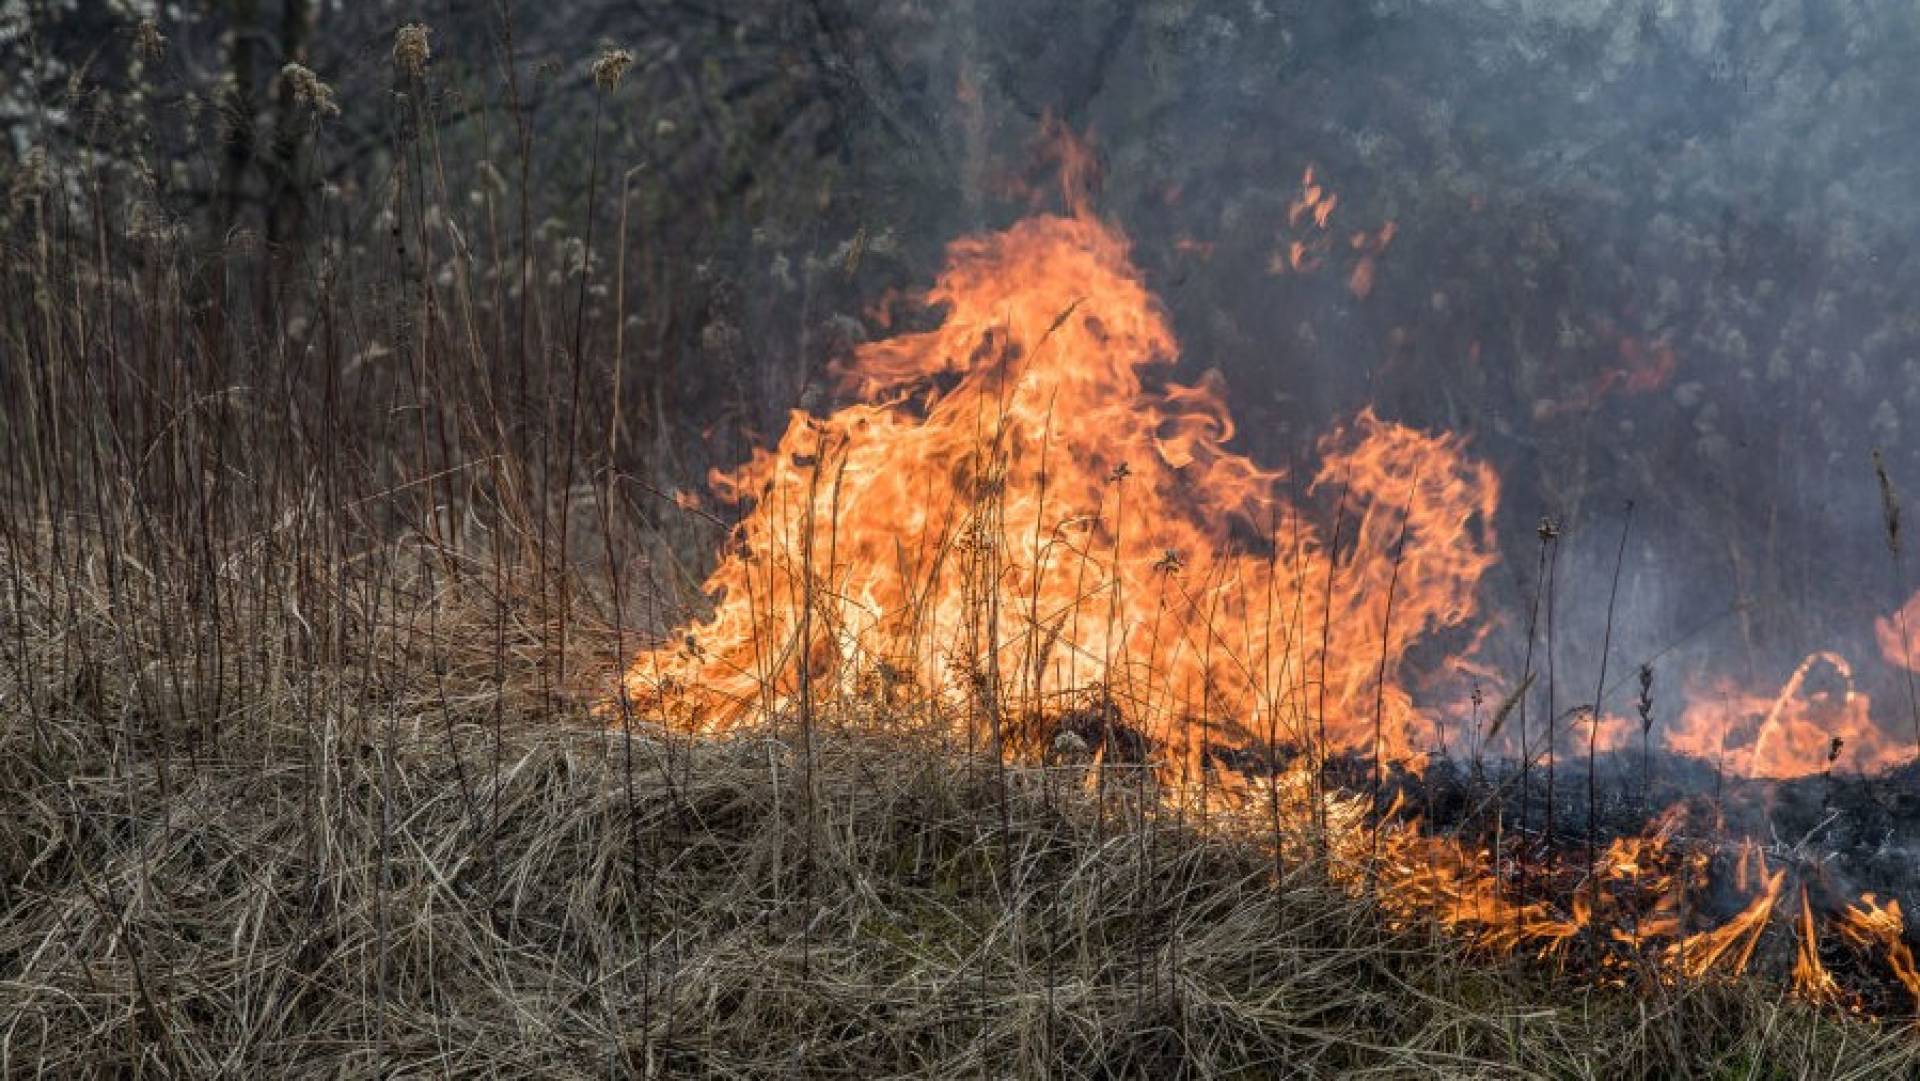 Kilkanaście pożarów dziennie! Ogromne ryzyko dla ludzi i niszczenie środowiska